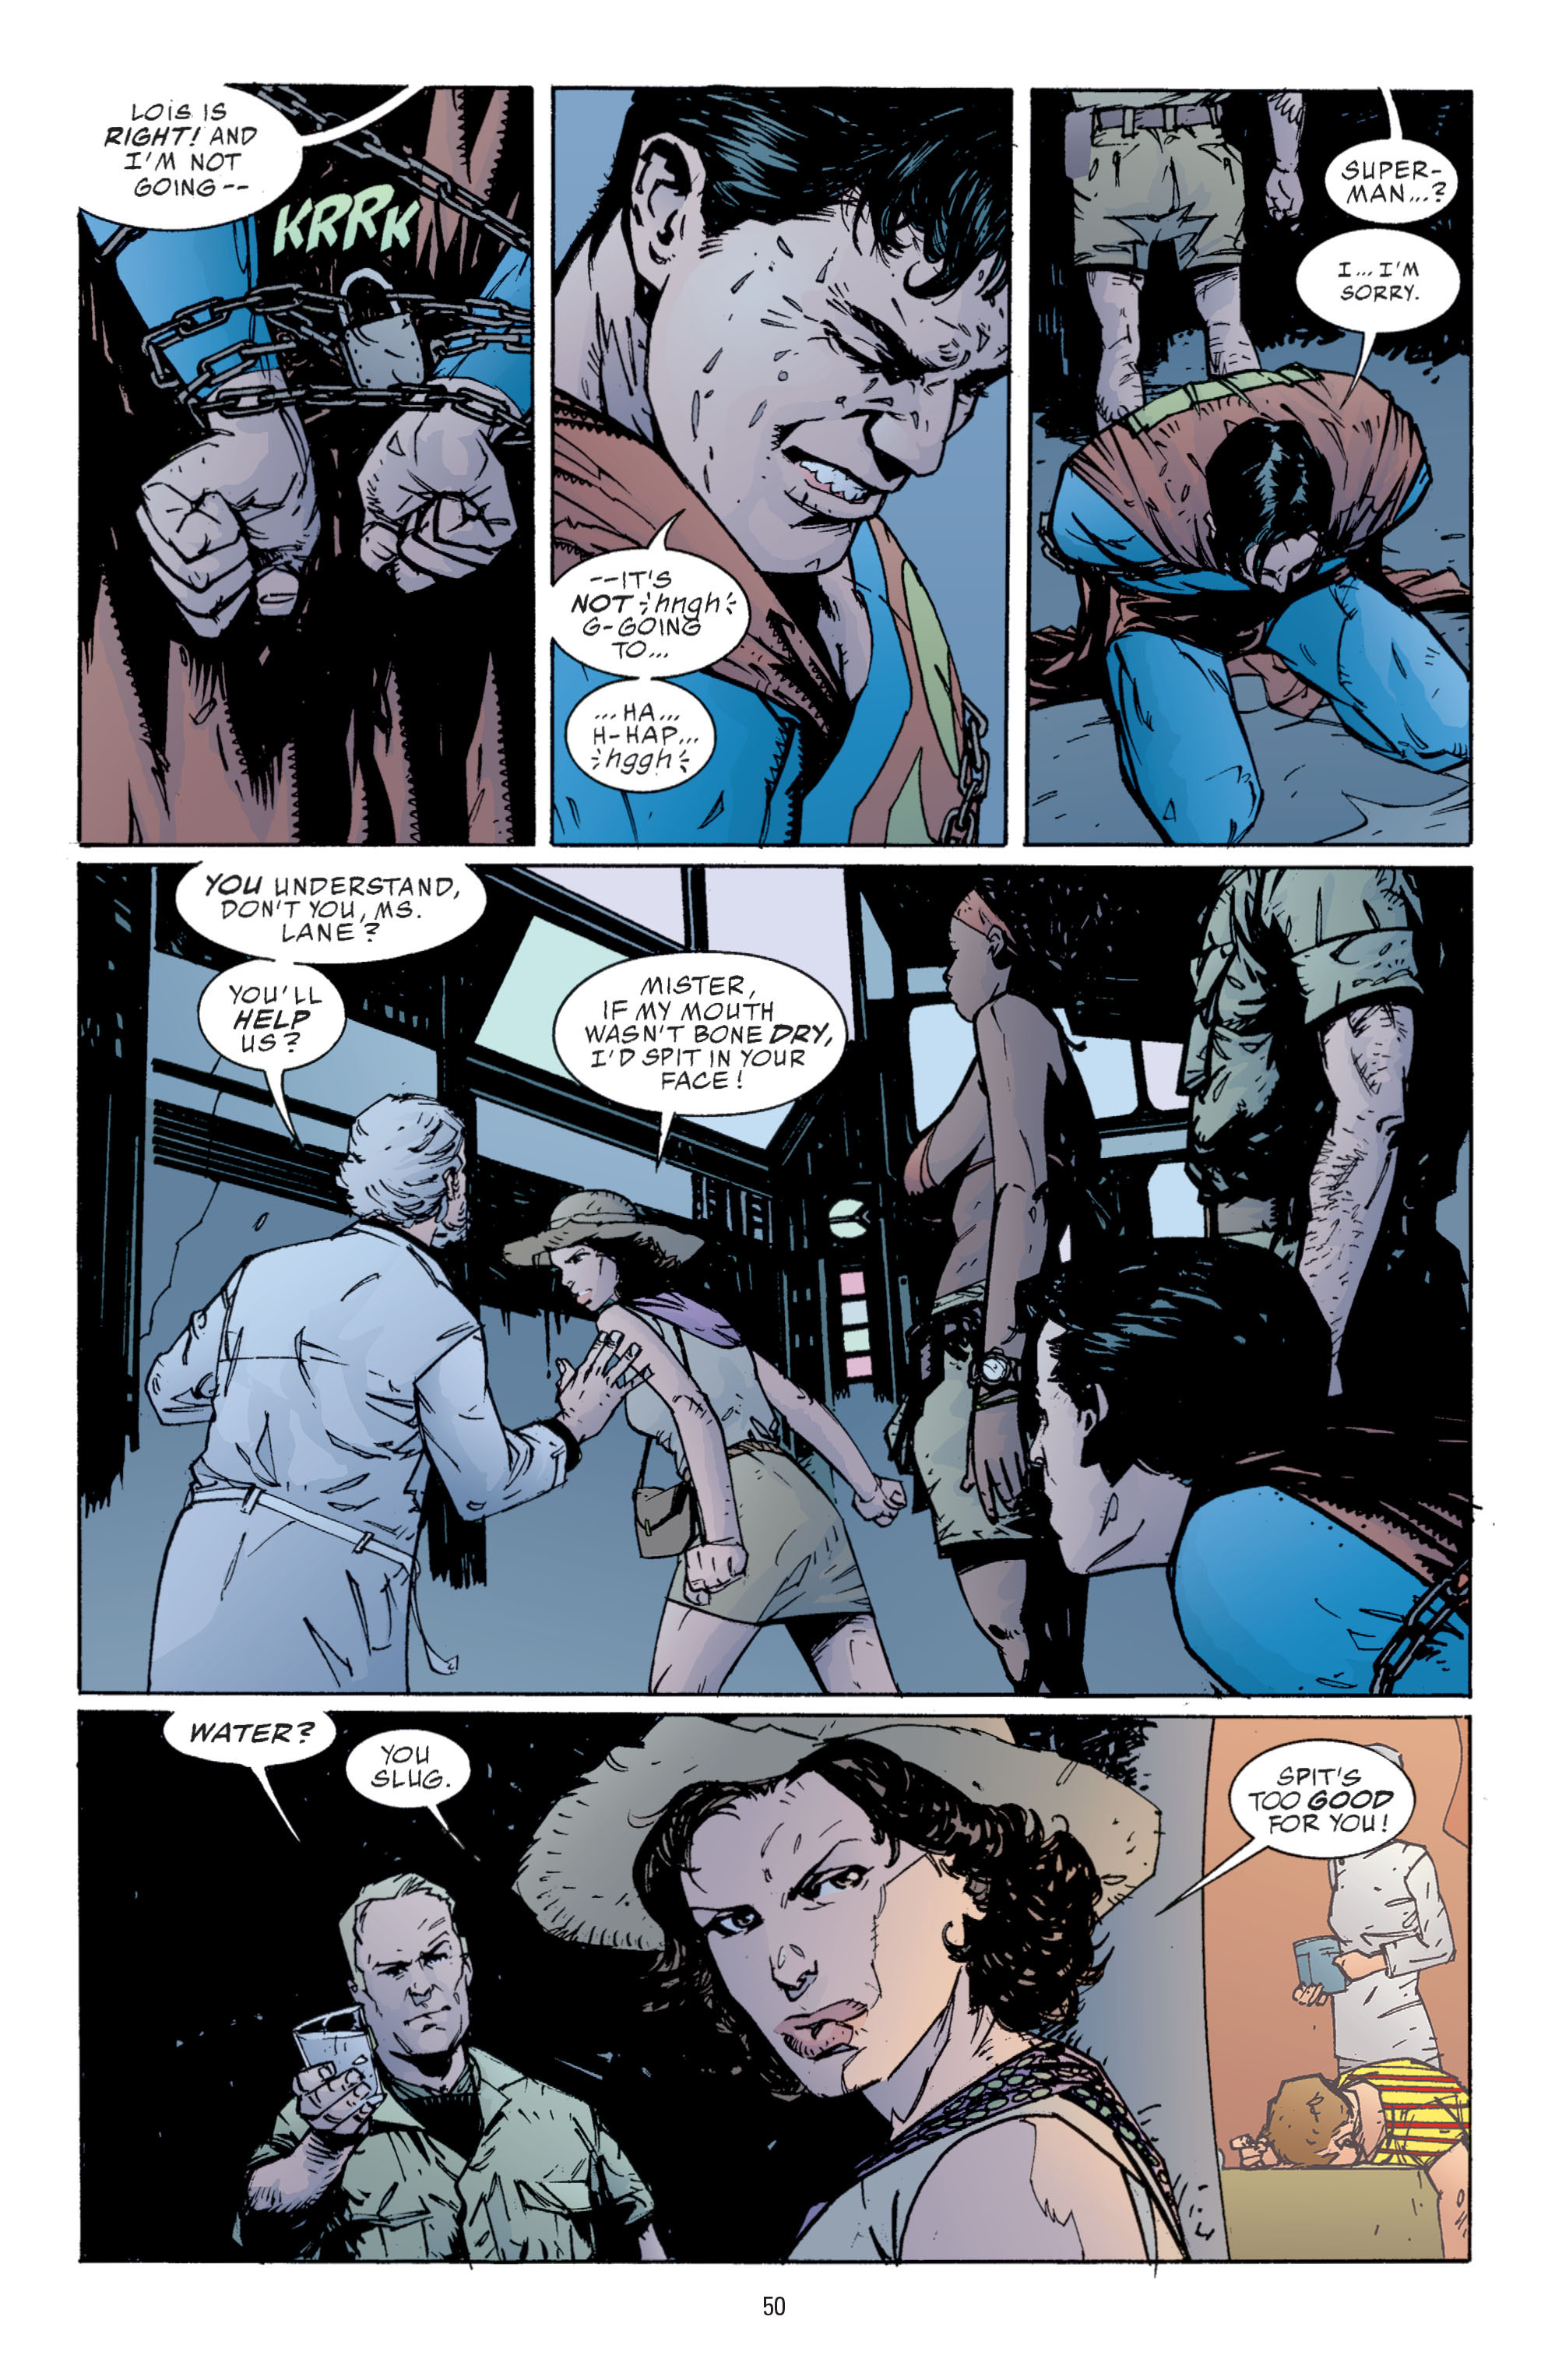 DC Comics/Dark Horse Comics: Justice League Full #1 - English 48